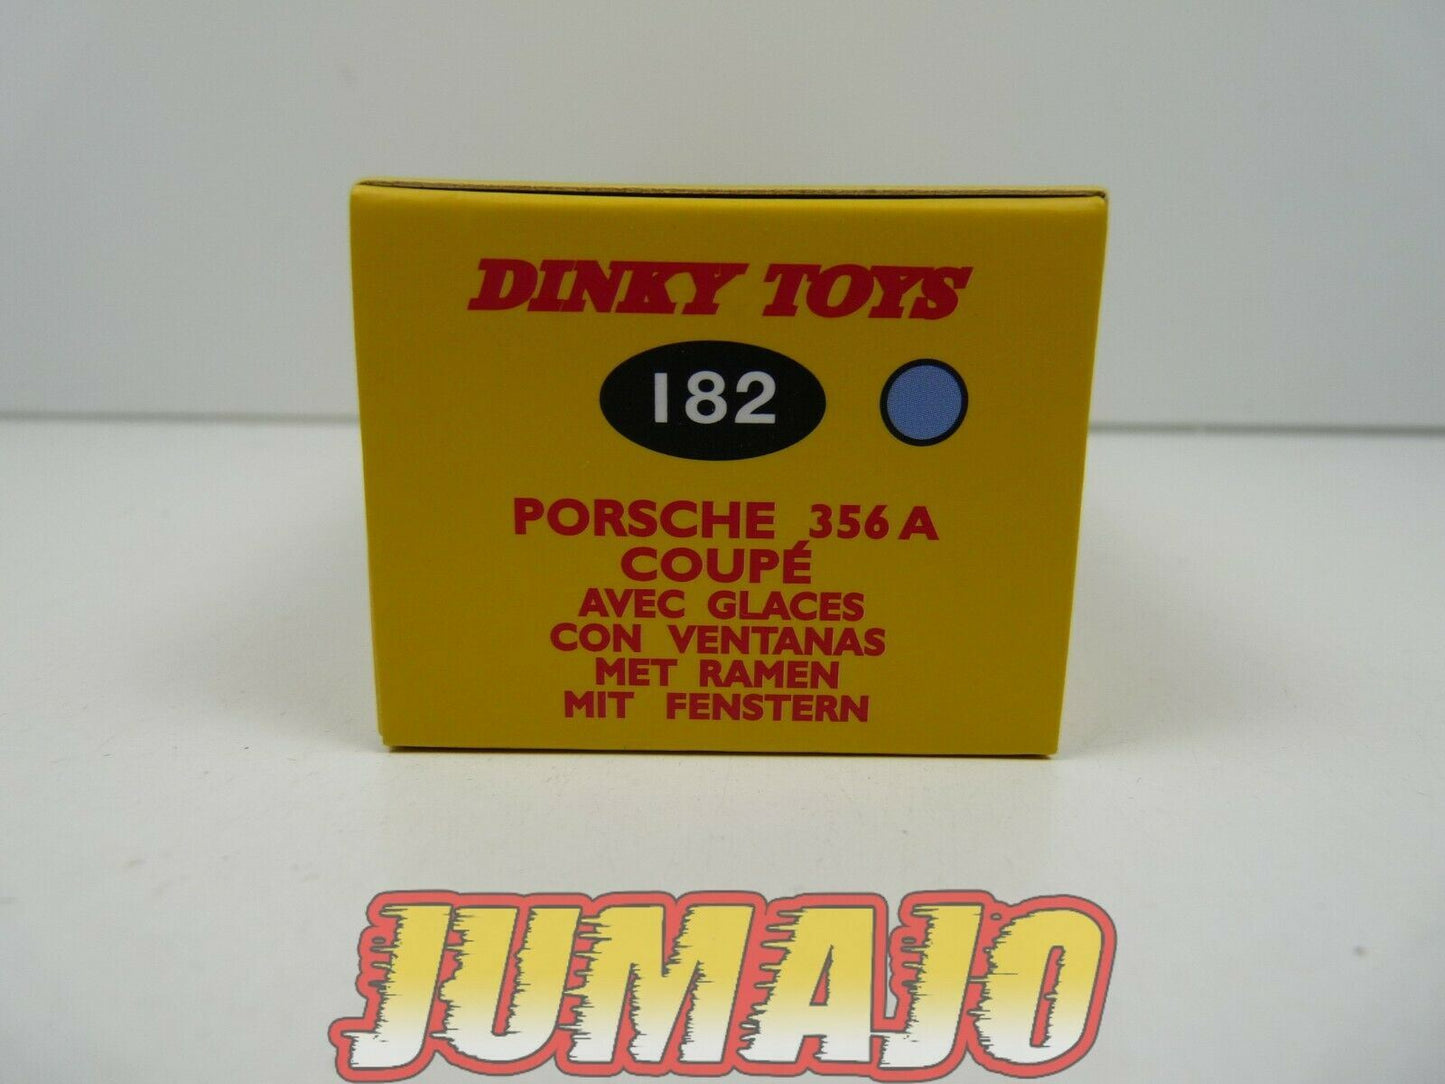 DT218 Voiture 1/43 réédition DINKY TOYS DeAgostini : Porsche 356 A Coupé 182